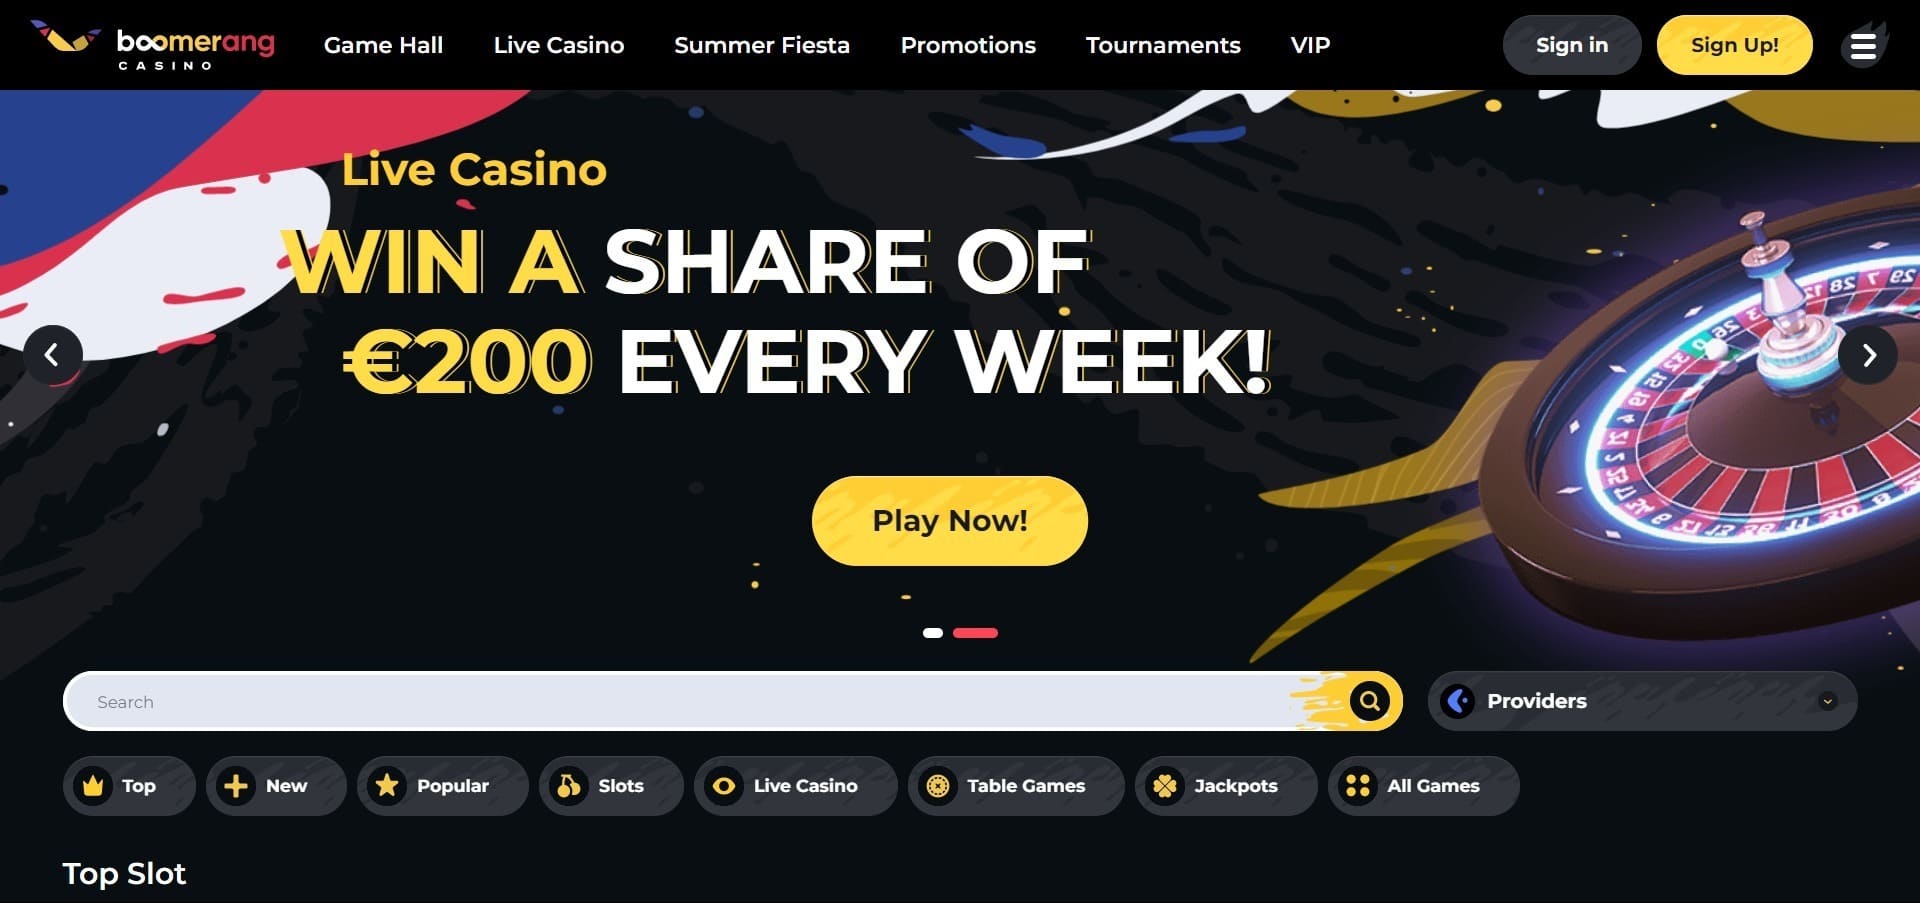 Επίσημος ιστότοπος της Boomerang Casino